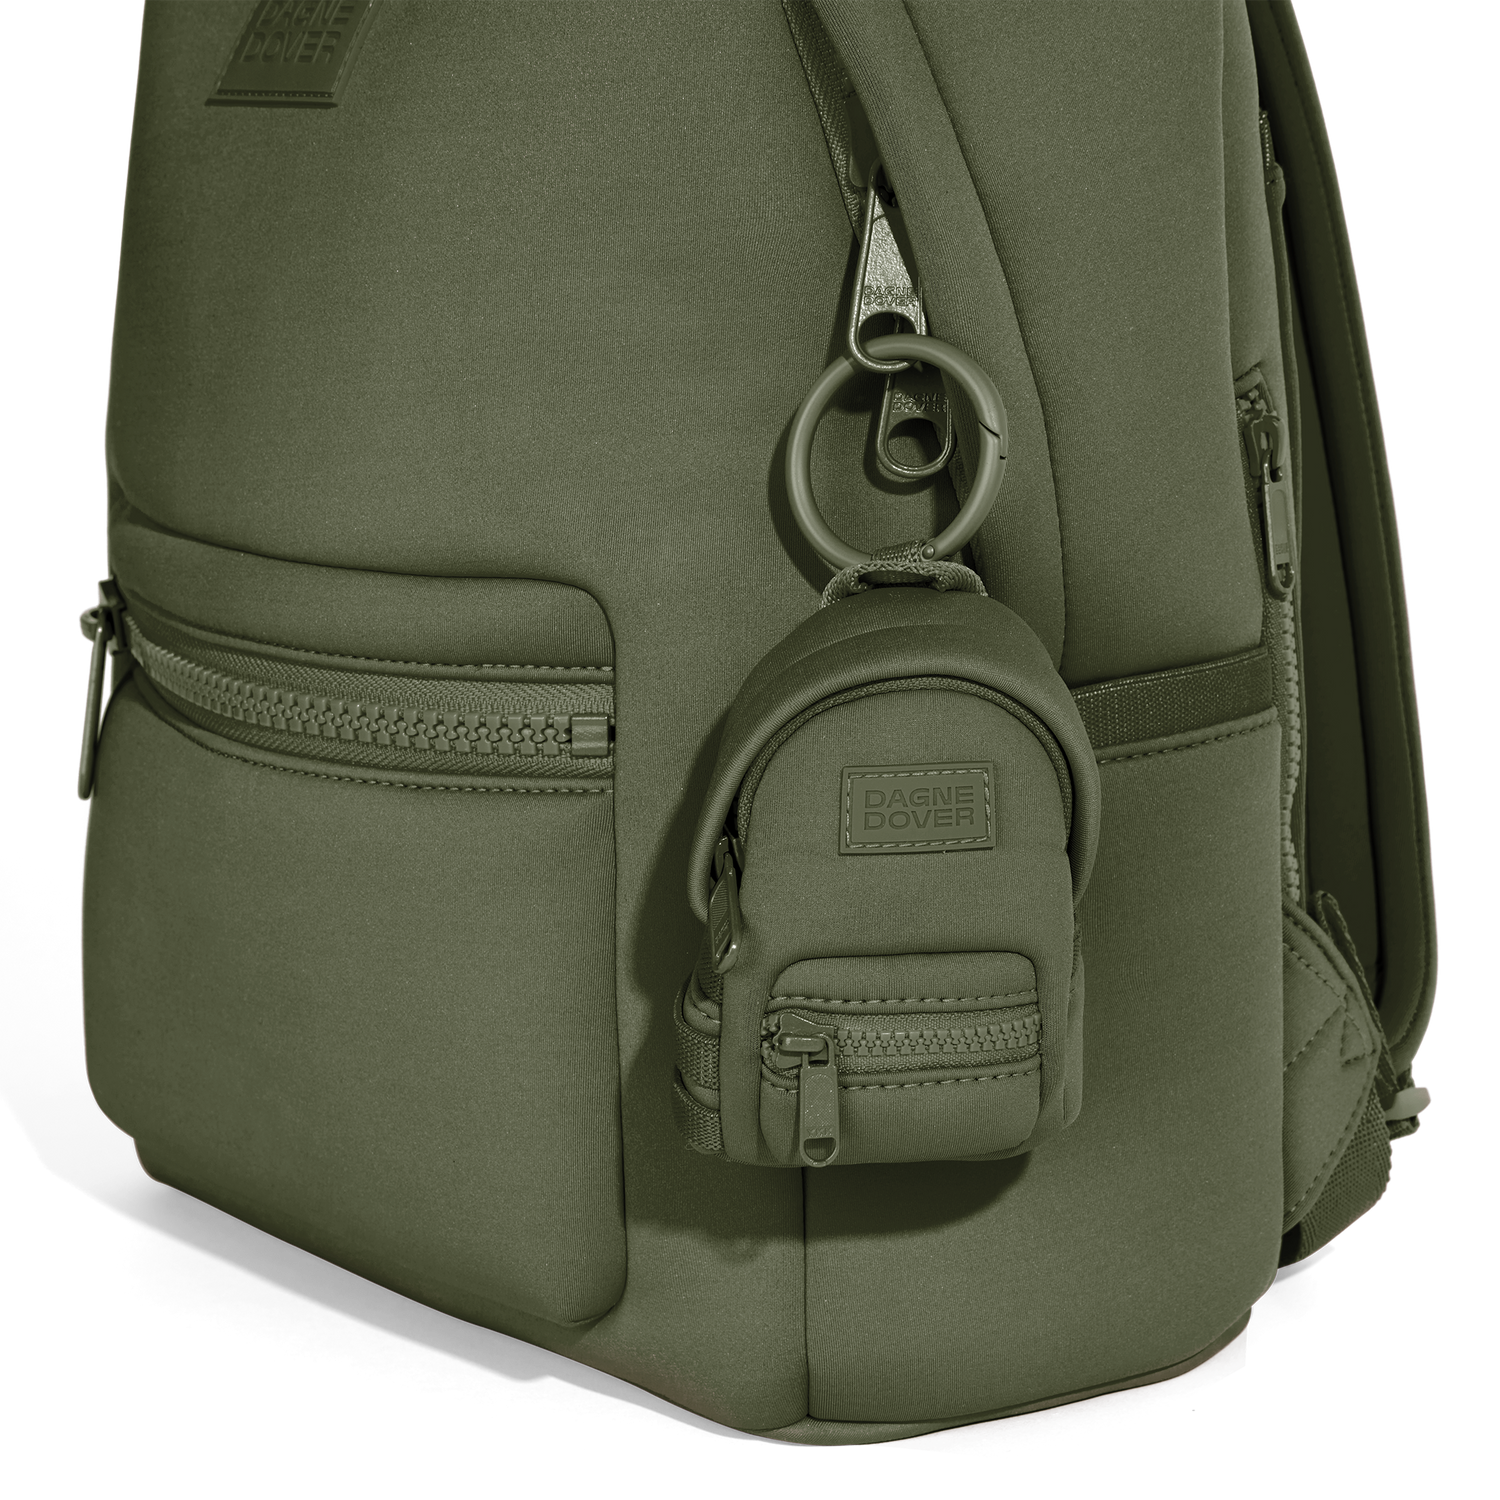 Dagne Dover Small Dakota Backpack in Gray